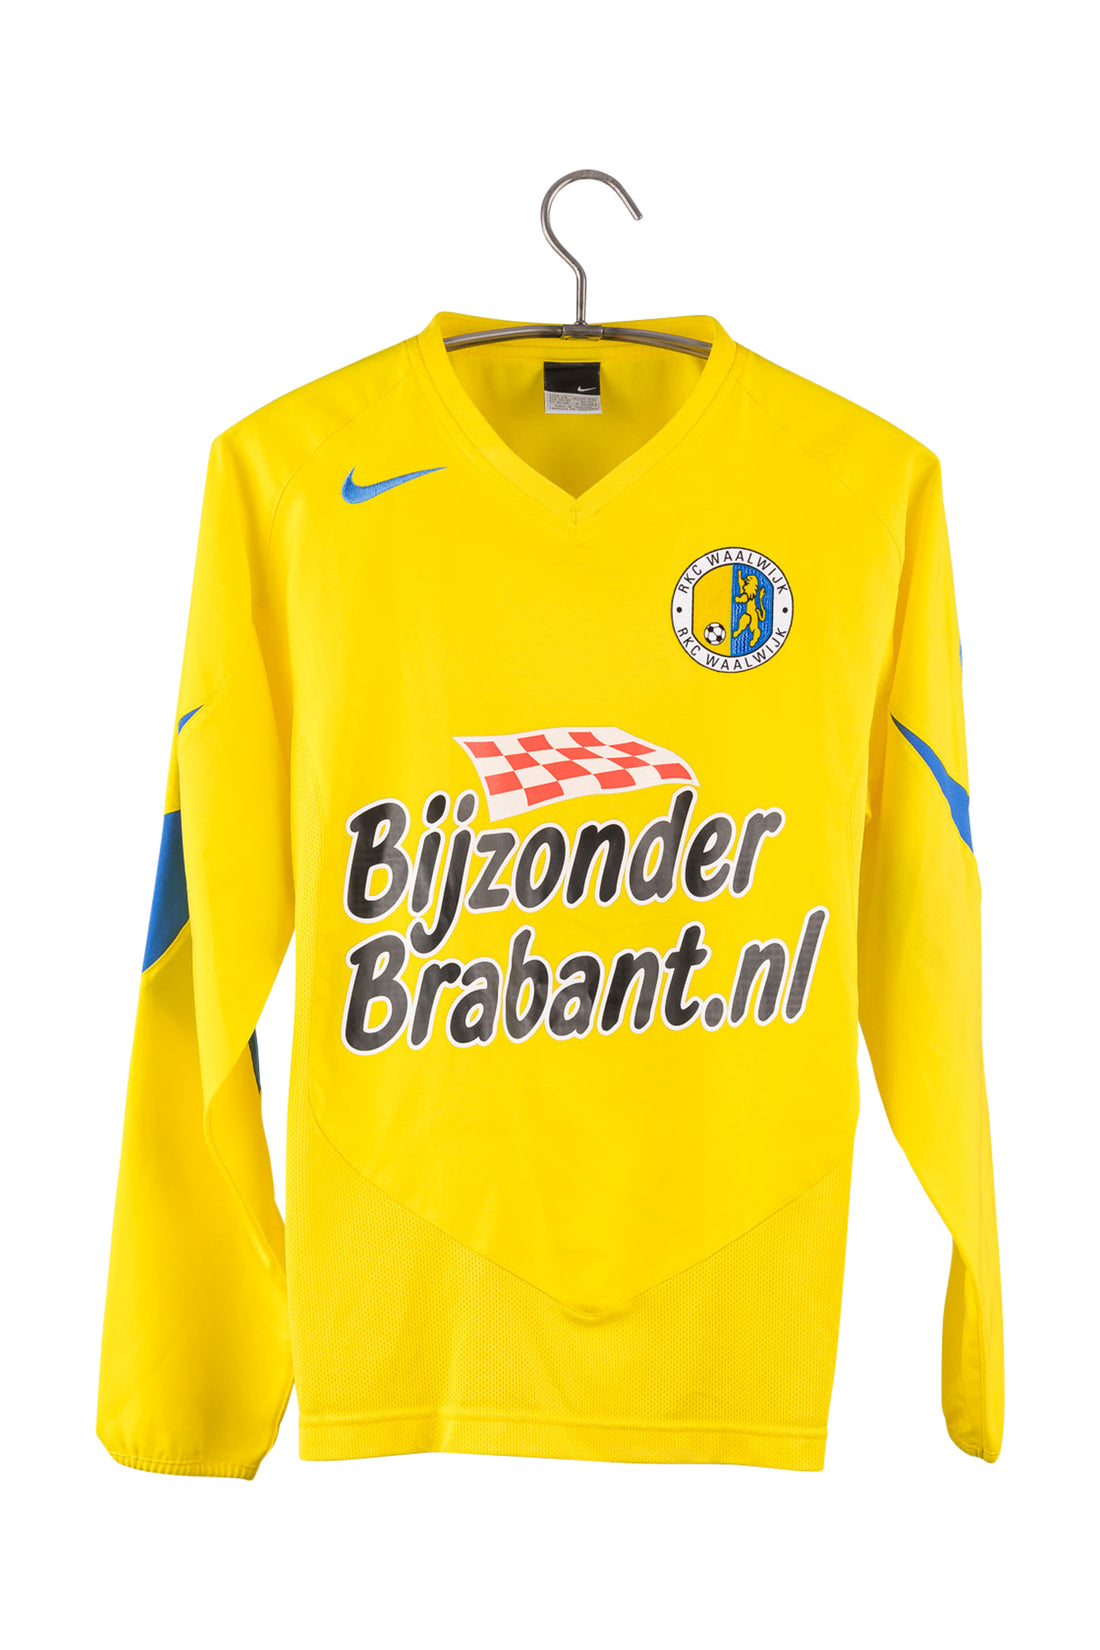 RKC Waalwijk 2005 - 2006 L/S Home Football Shirt #6